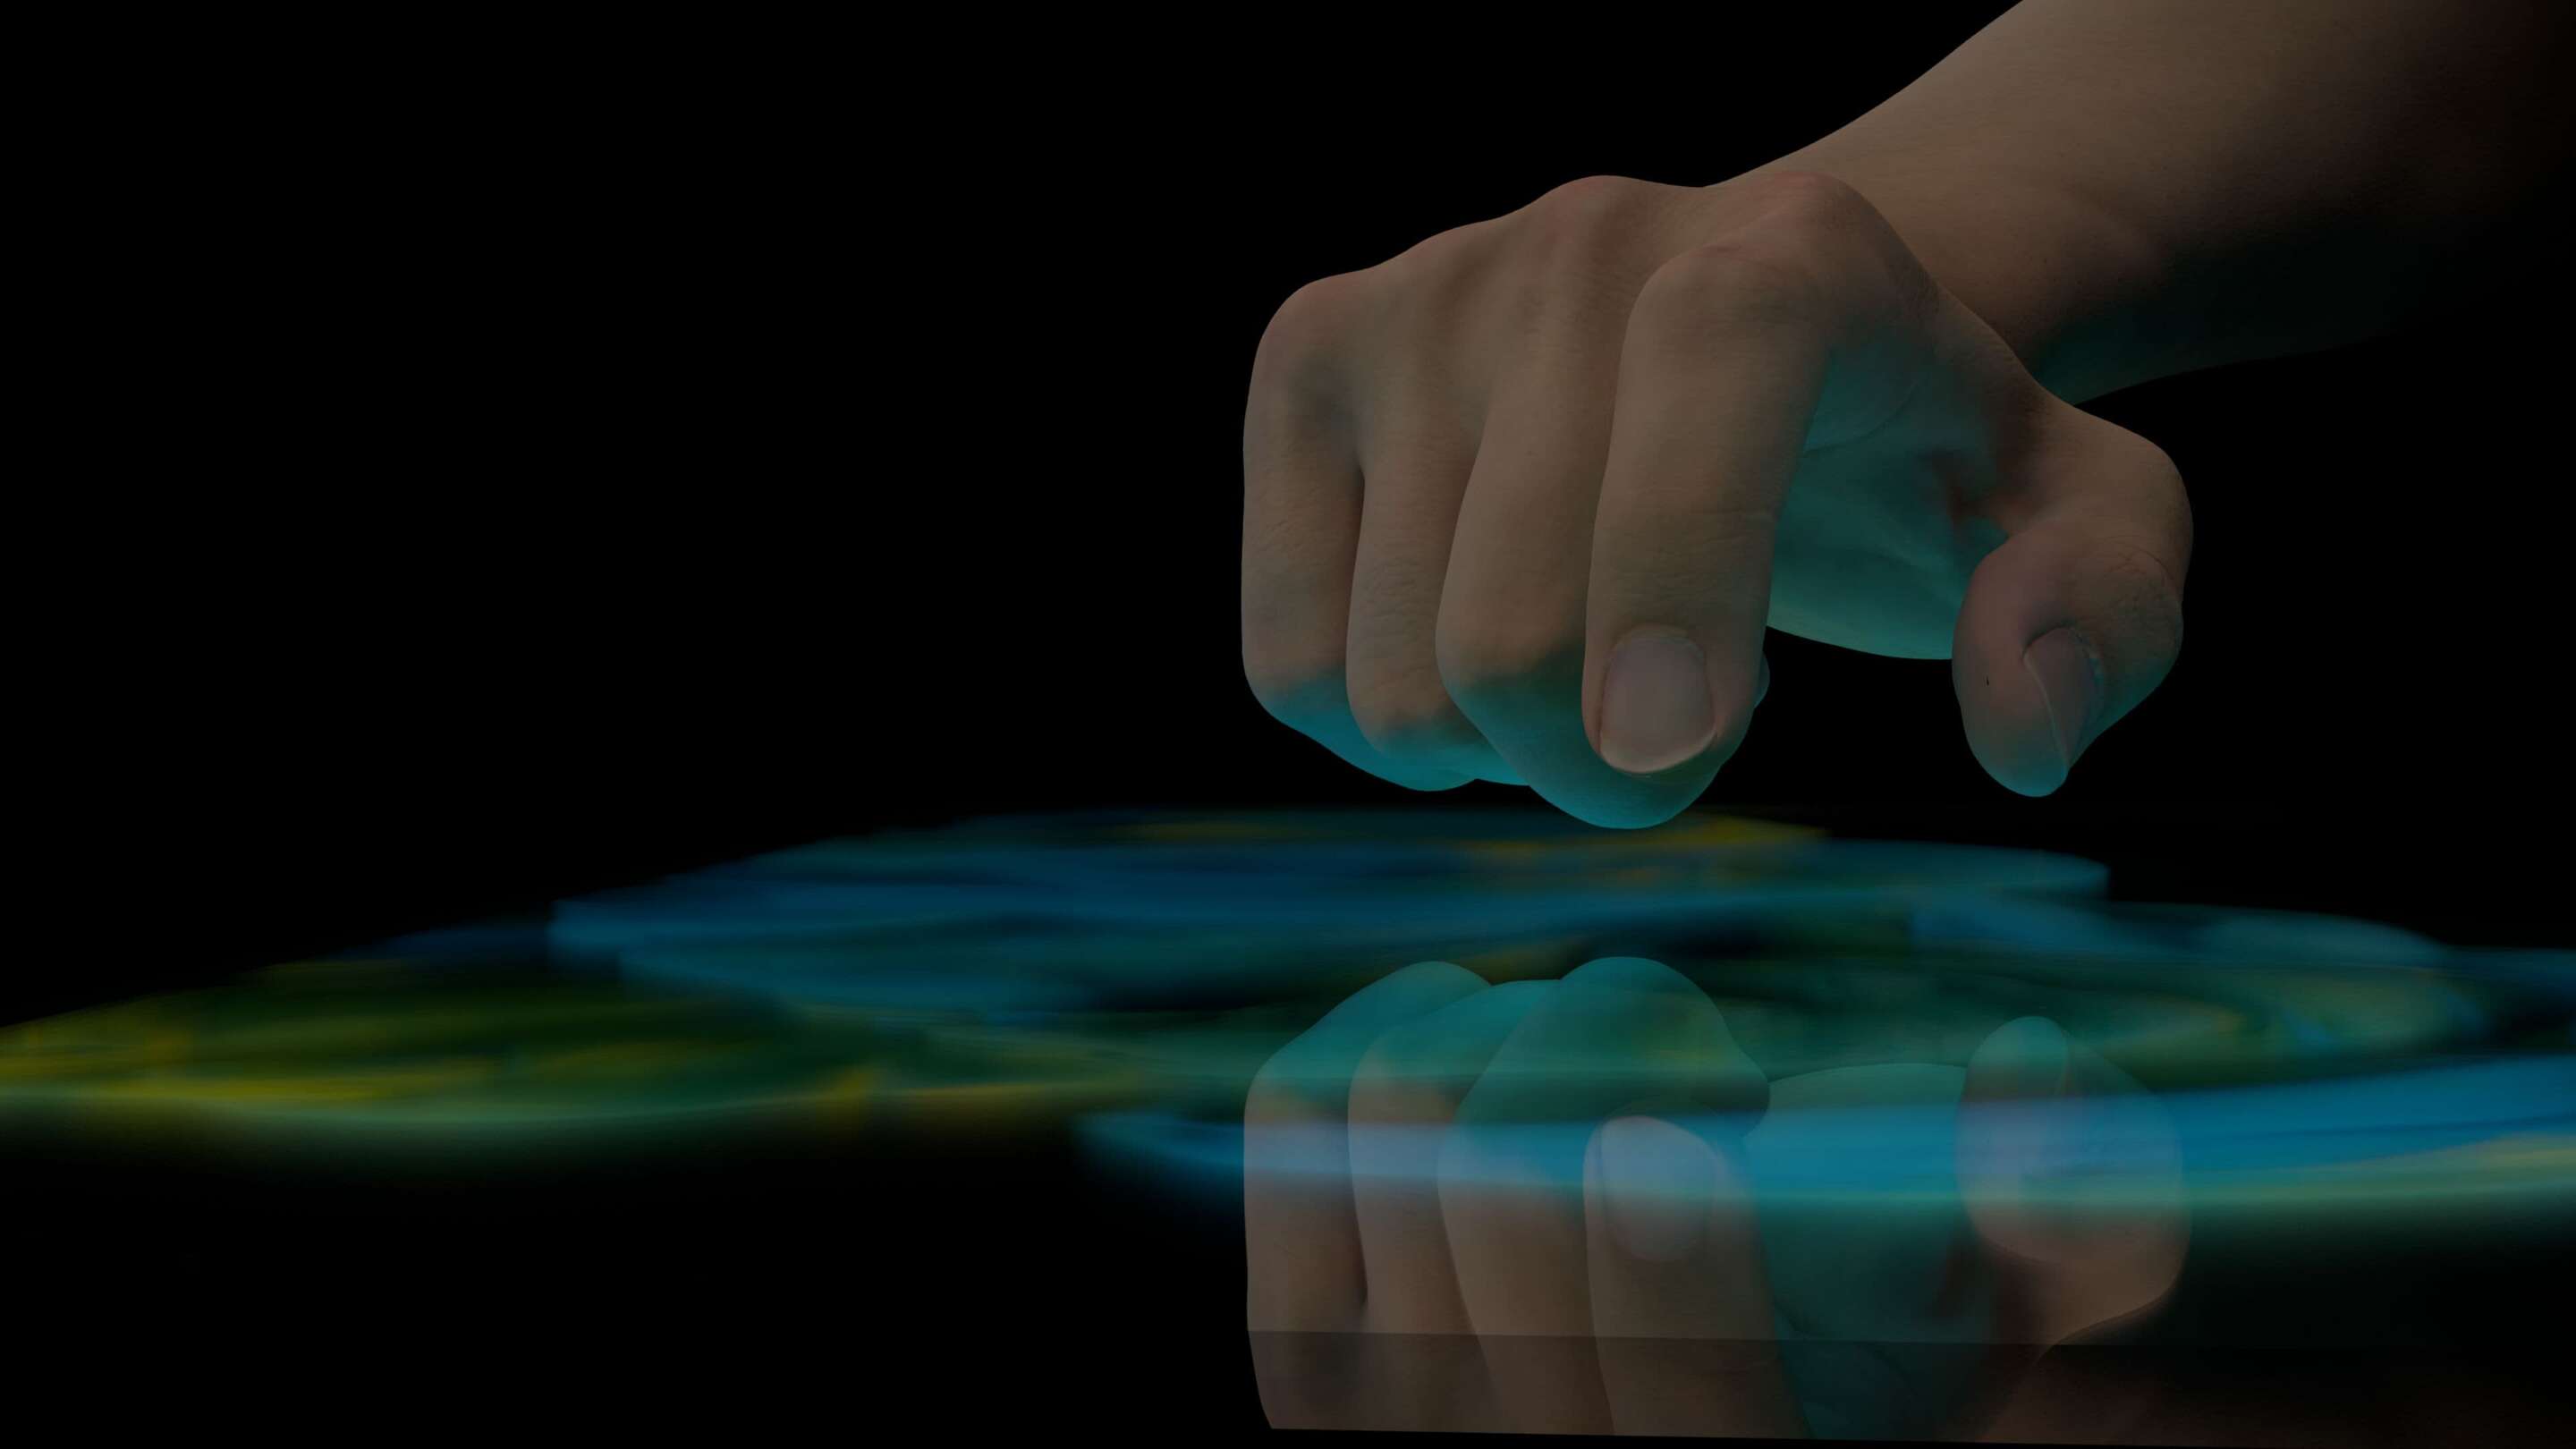 Design - Permiteți-ne să vă impresionăm un prim-plan al unei mâini care atinge un ecran tactil